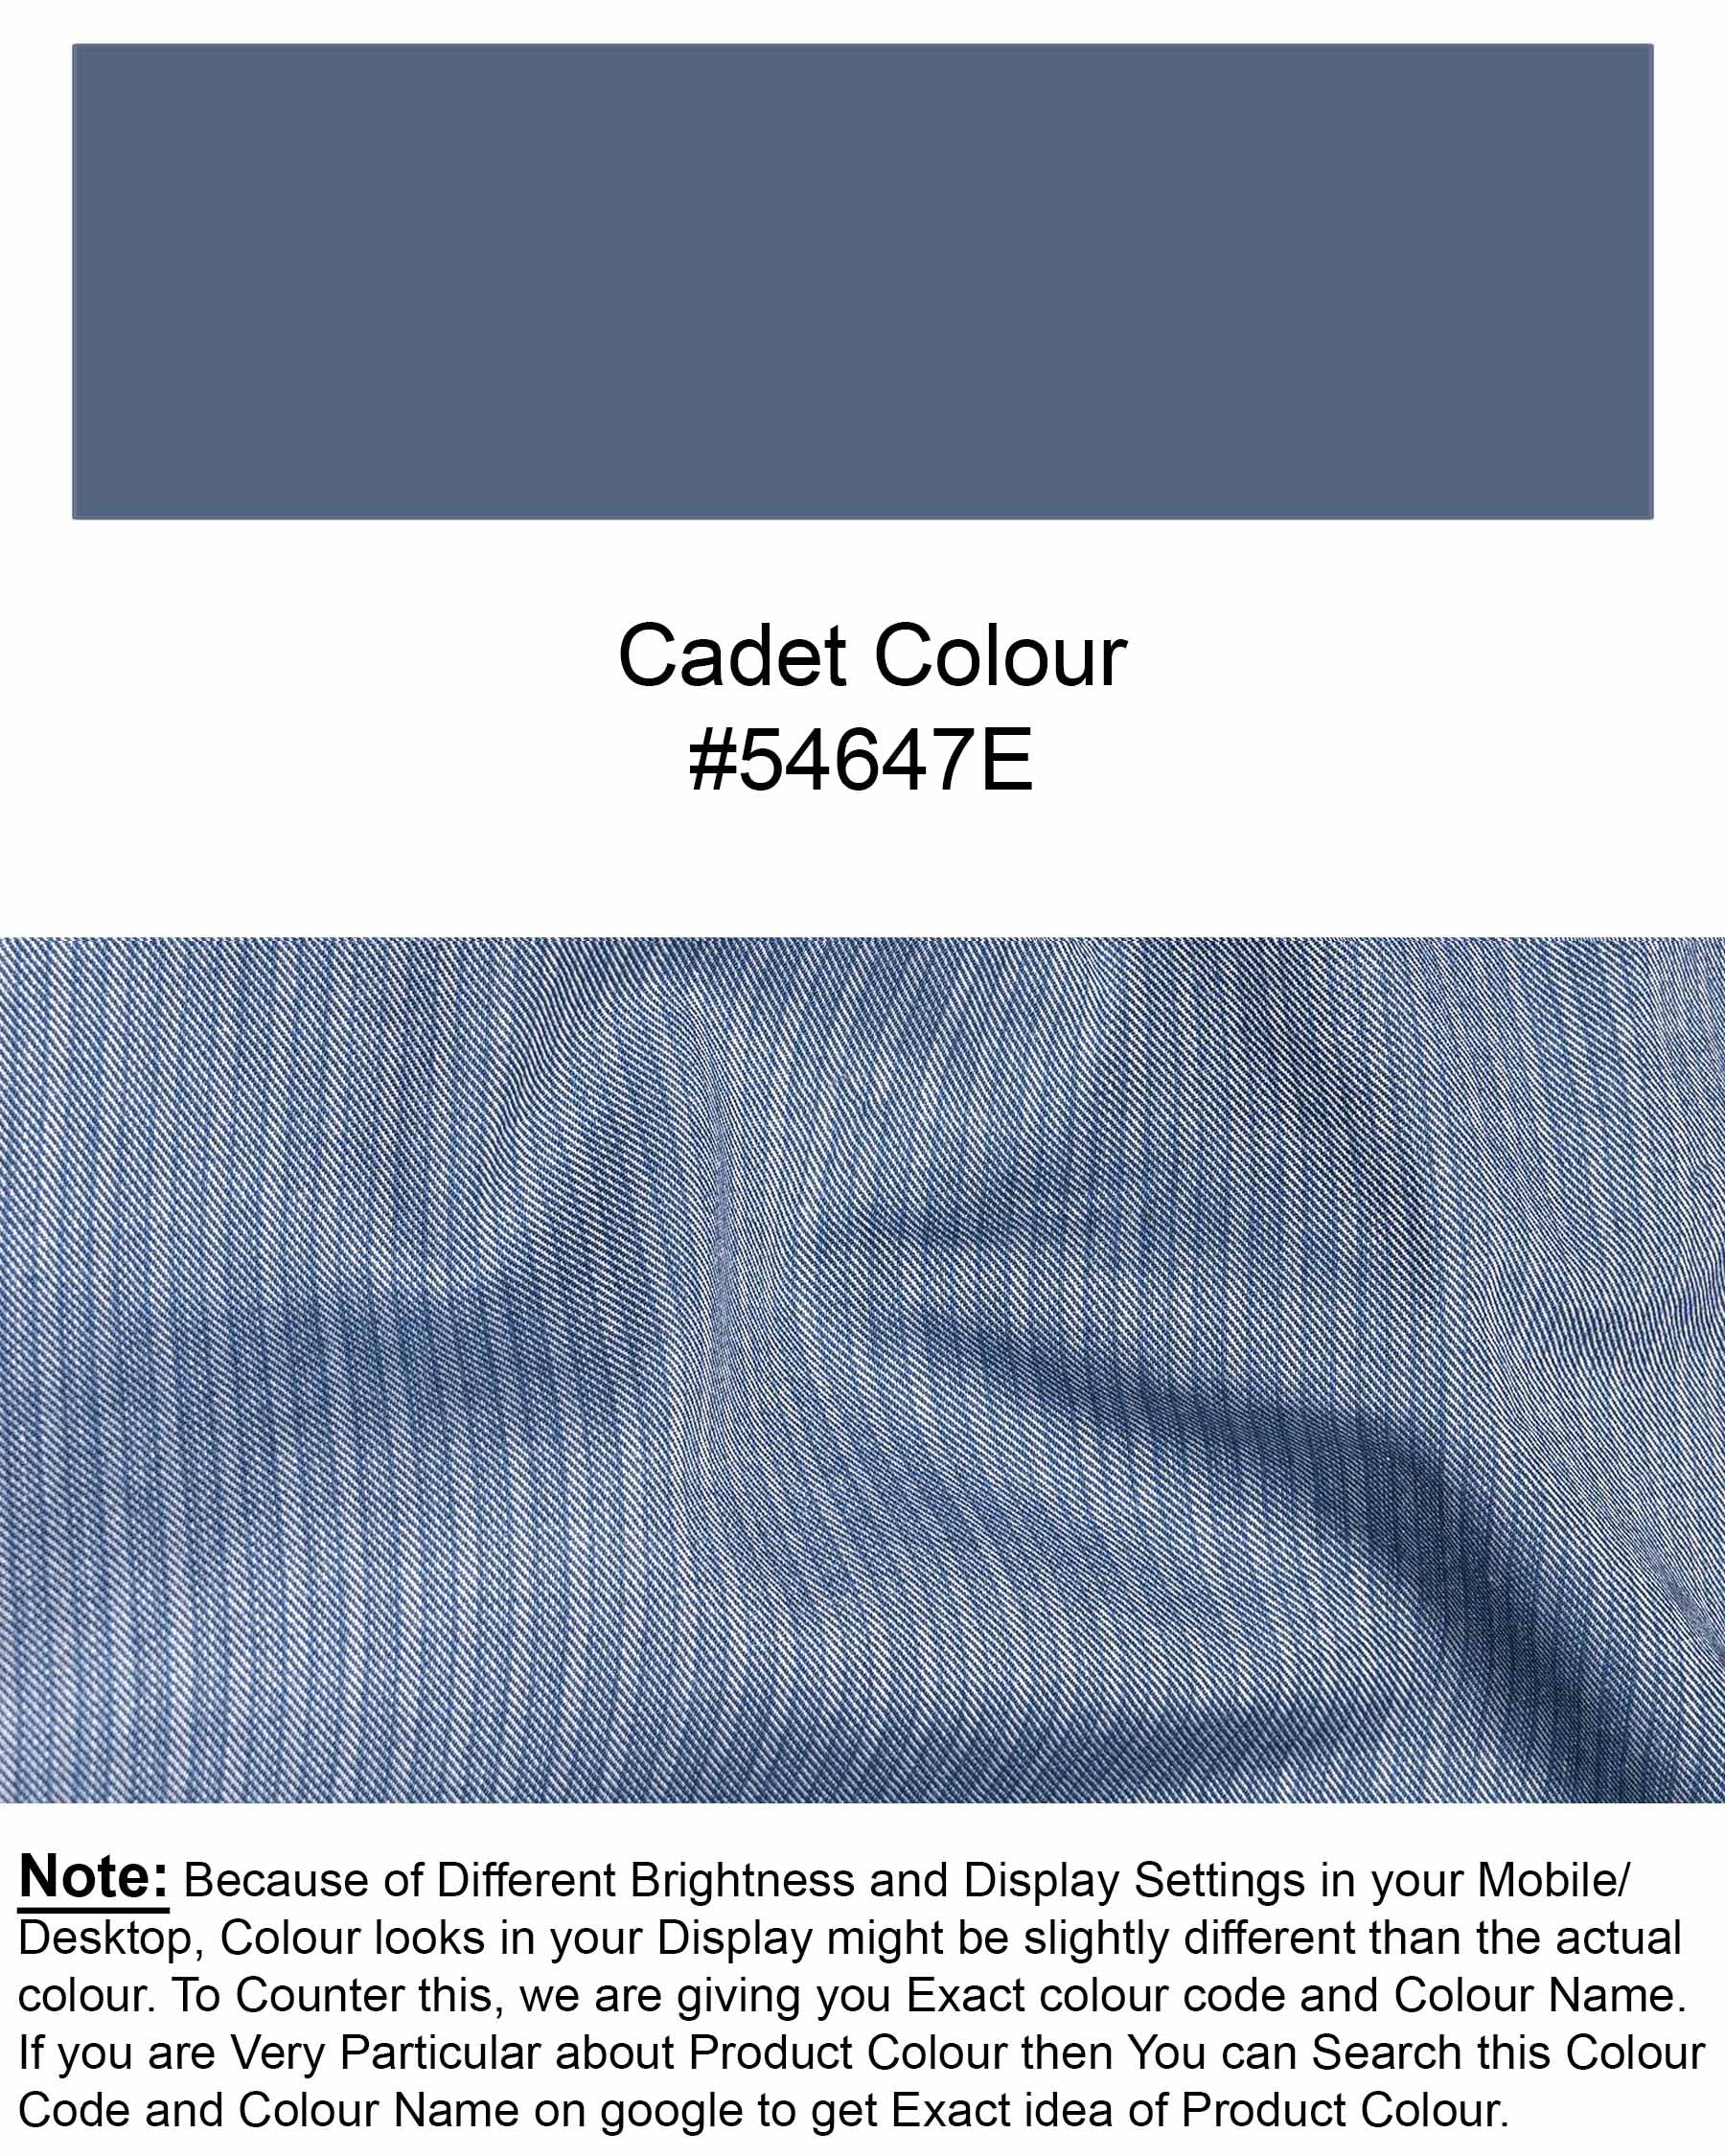 Cadet Blue Twill Striped Textured Premium Cotton 6420-BD-BLK-38, 6420-BD-BLK-H-38, 6420-BD-BLK-39, 6420-BD-BLK-H-39, 6420-BD-BLK-40, 6420-BD-BLK-H-40, 6420-BD-BLK-42, 6420-BD-BLK-H-42, 6420-BD-BLK-44, 6420-BD-BLK-H-44, 6420-BD-BLK-46, 6420-BD-BLK-H-46, 6420-BD-BLK-48, 6420-BD-BLK-H-48, 6420-BD-BLK-50, 6420-BD-BLK-H-50, 6420-BD-BLK-52, 6420-BD-BLK-H-52